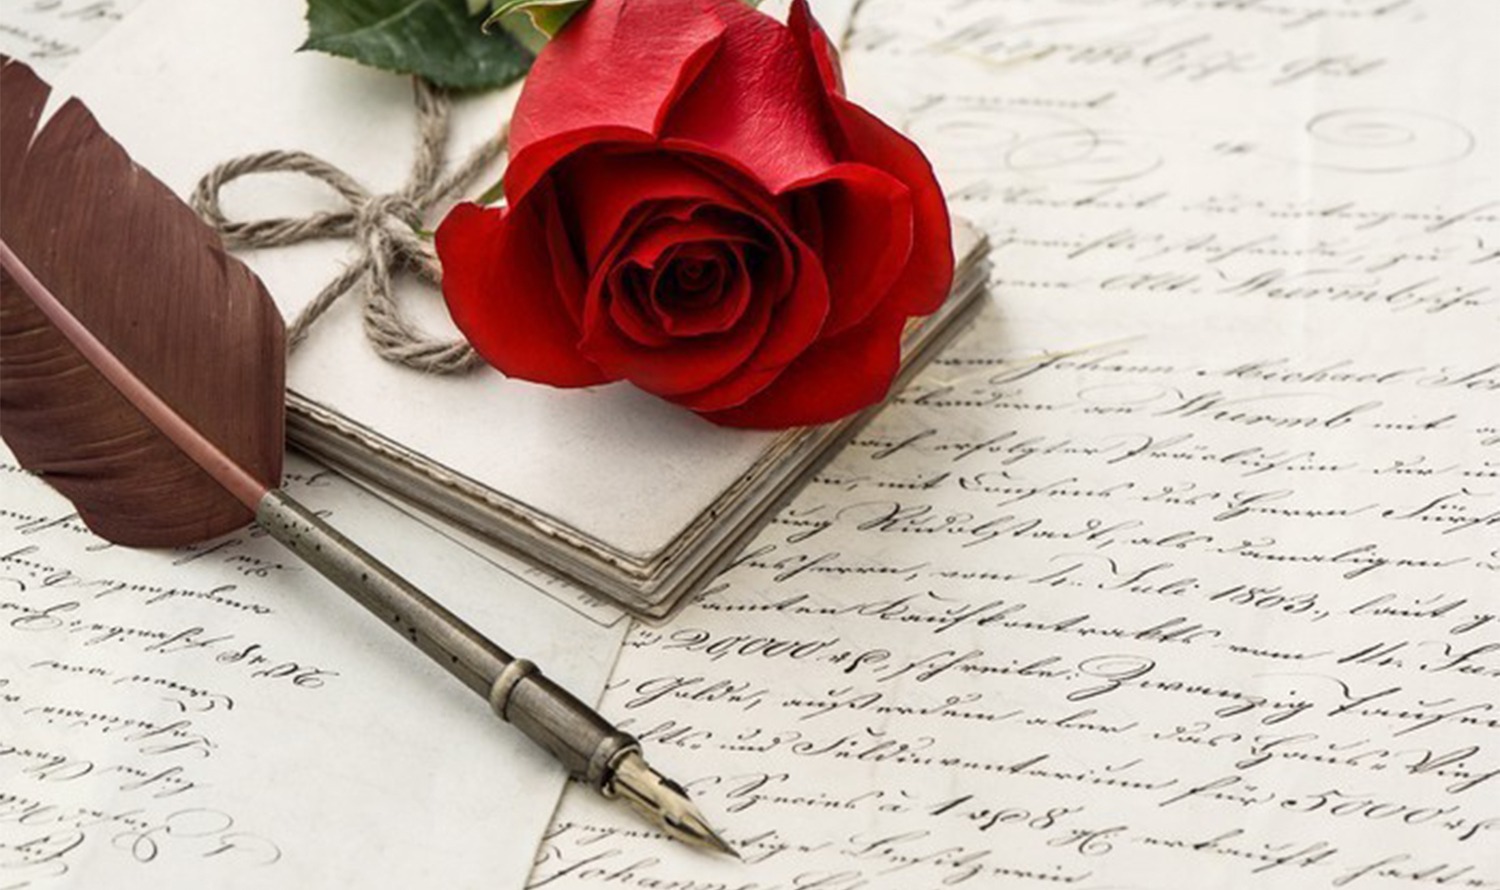 Auf dem Bild sind eine rote Rose, ein alter Füllfederhalter und mehrere handgeschriebene Briefe zu sehen, die eine nostalgische Atmosphäre erzeugen.